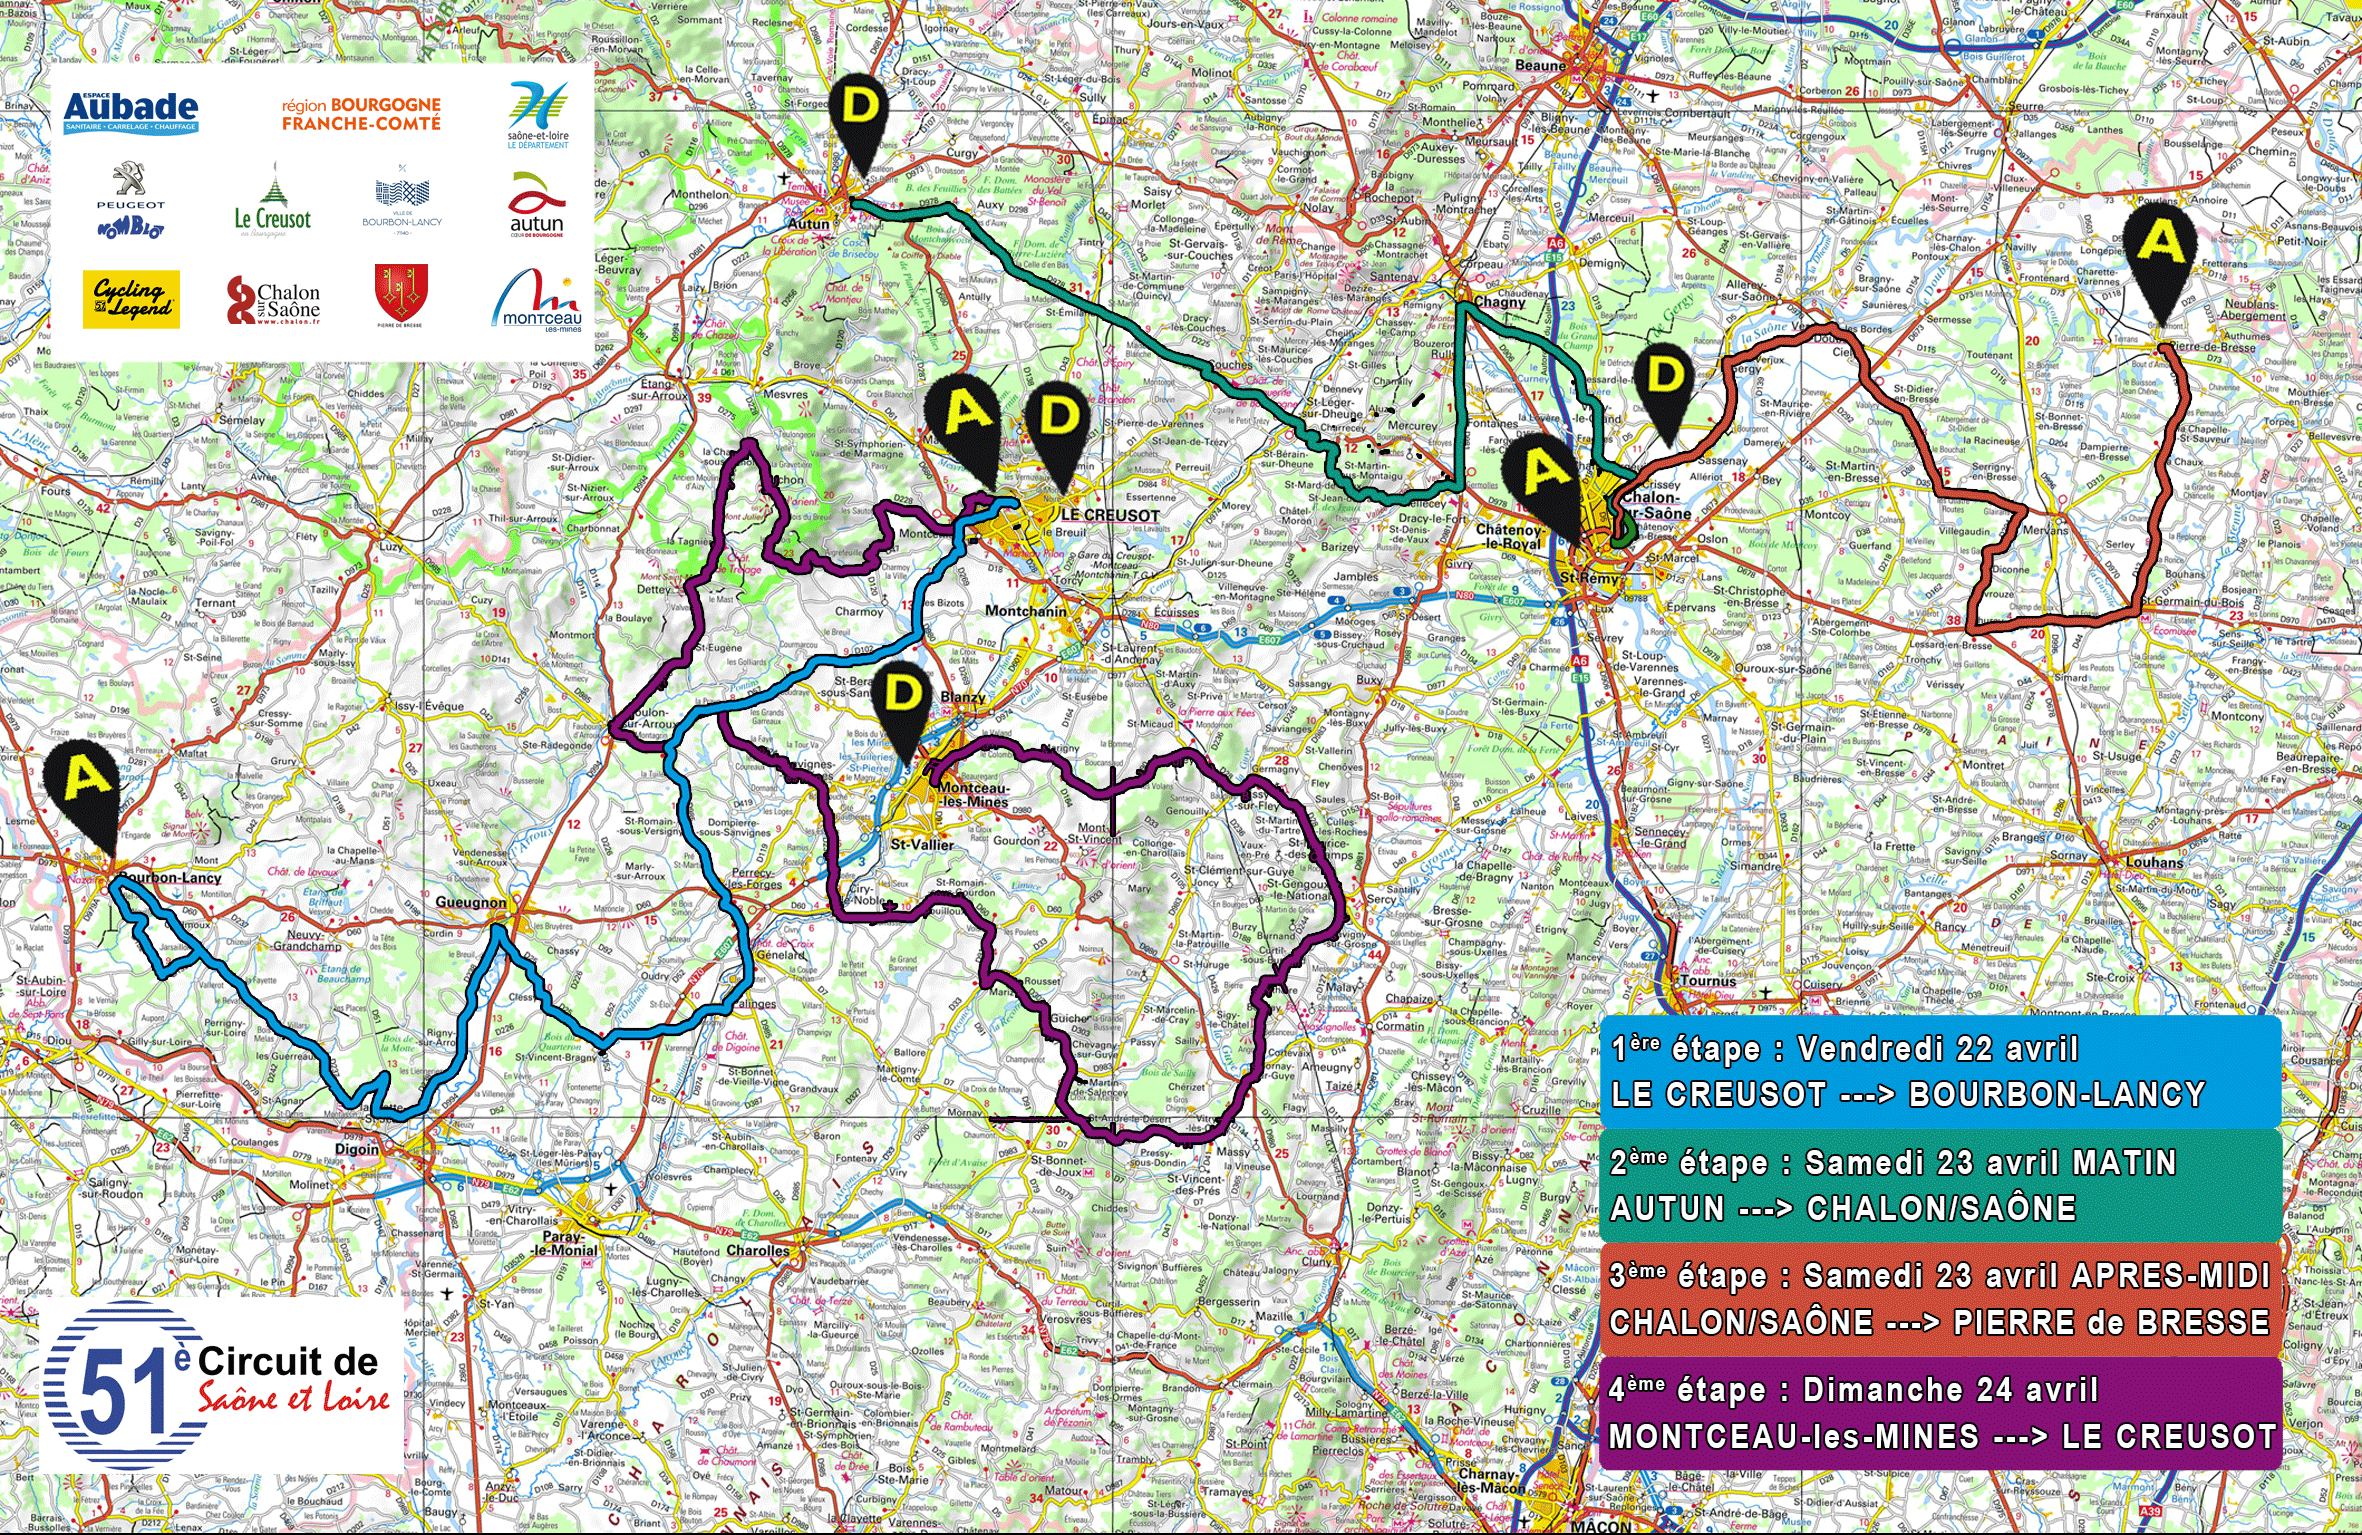 51eme-Circuit-de-Saone-et-Loire---Les-4-etapes---Maj-du-13-03-2016-pour-INTERNET